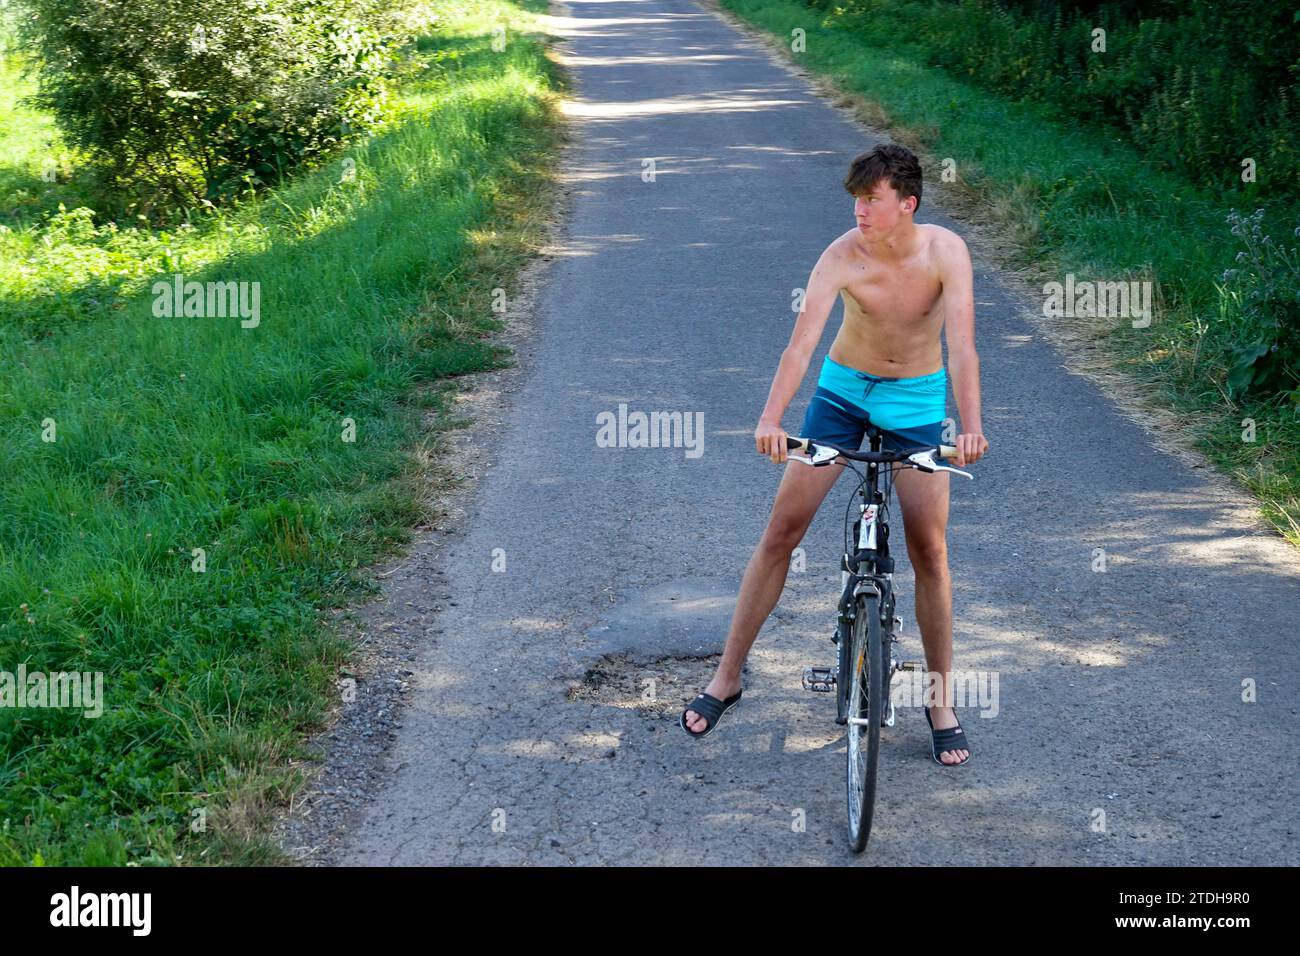 giovane solo 20 anni in bicicletta su una strada rurale, estate, solo in pantaloncini corti in bicicletta senza casco, clima caldo Foto Stock